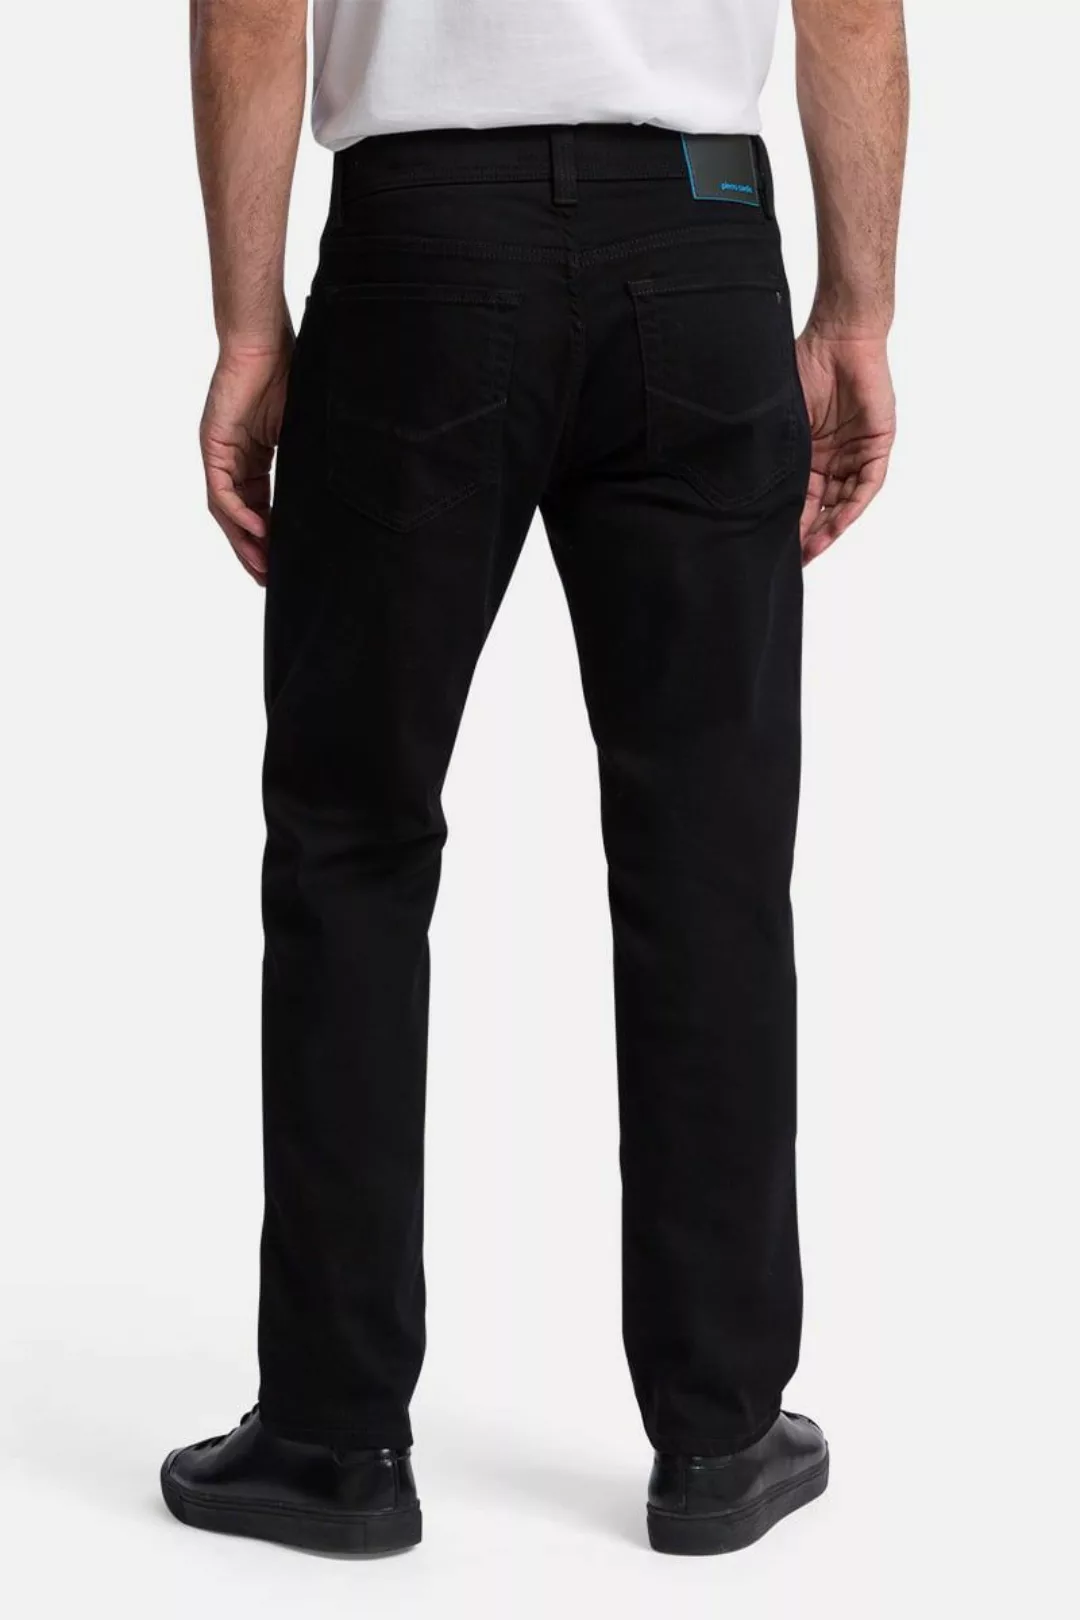 Pierre Cardin Trousers Lyon Tapered Future Flex Schwarz - Größe W 40 - L 36 günstig online kaufen